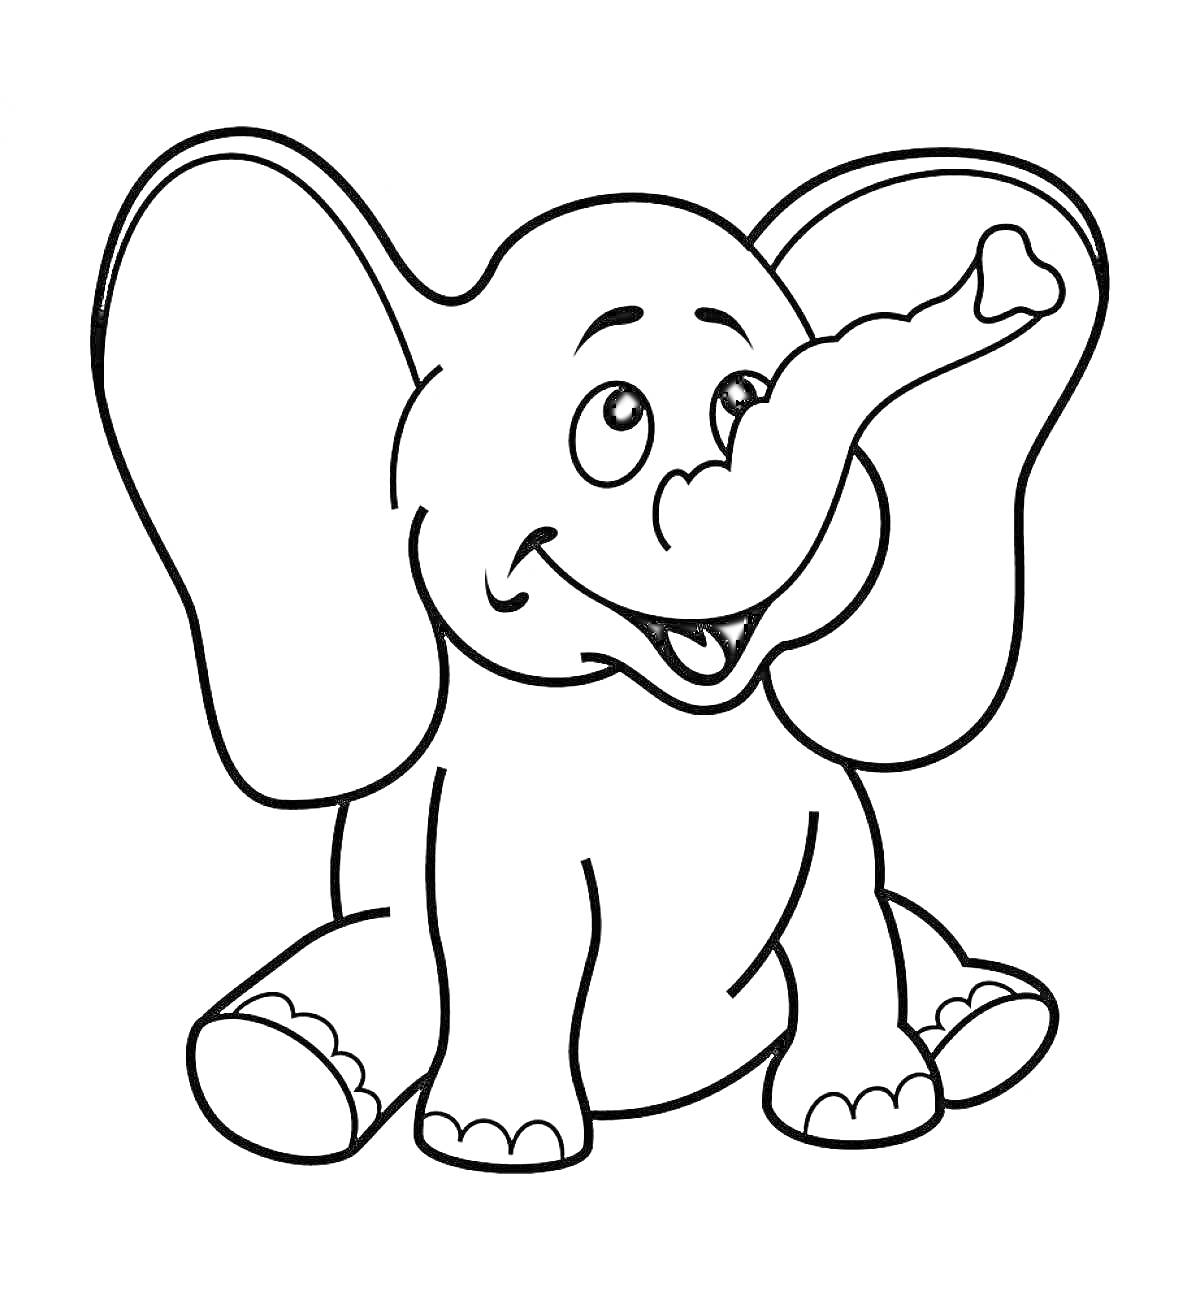 Раскраска Раскраска с изображением сидящего улыбающегося слона с поднятым хоботом